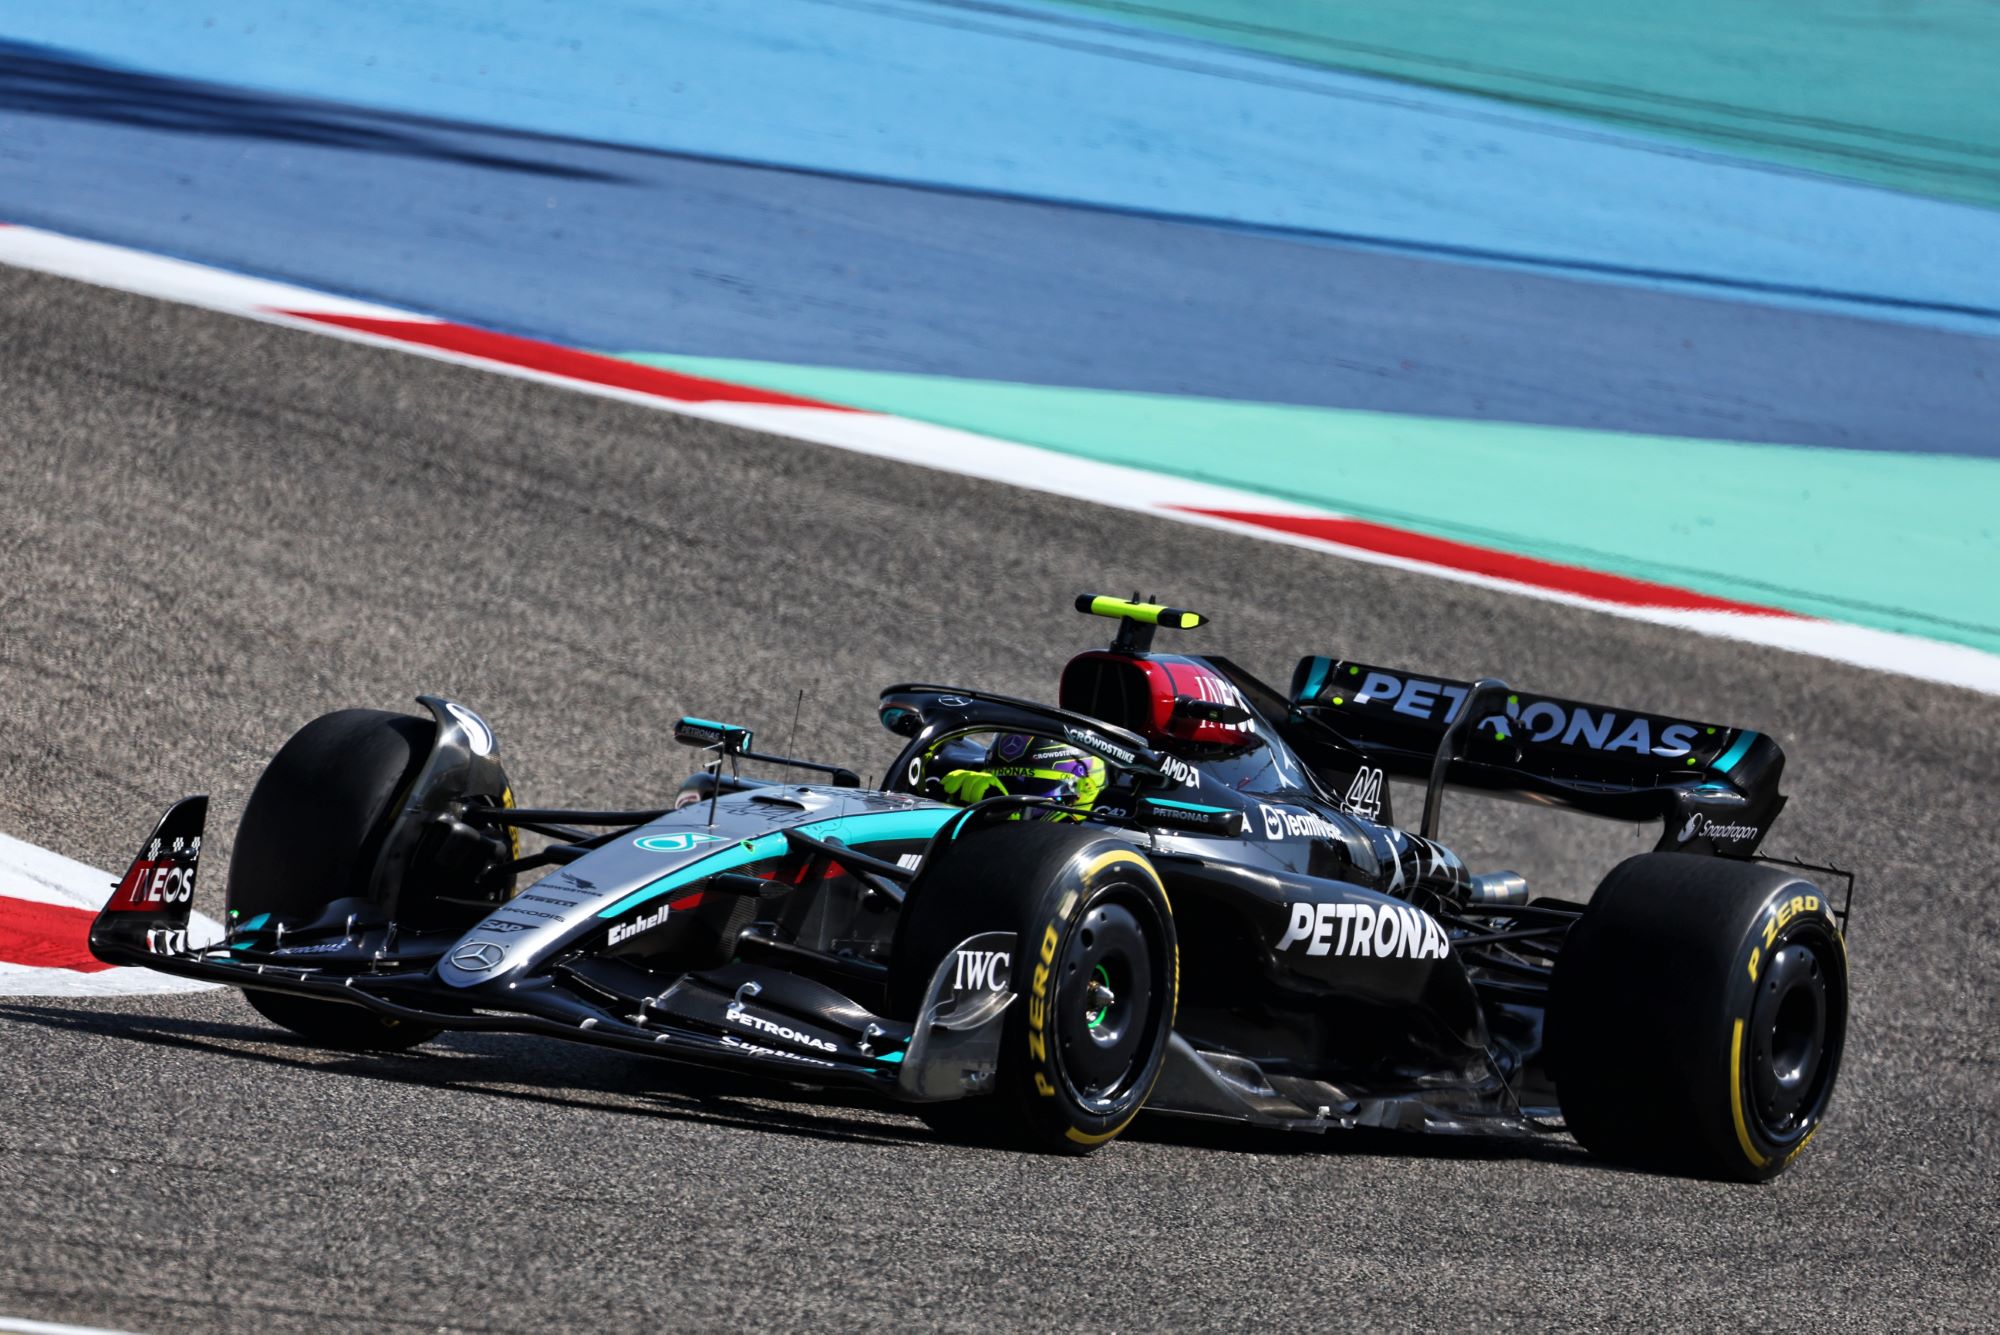 F1: Hamilton garante dobradinha da Mercedes no segundo treino para o GP do Bahrein